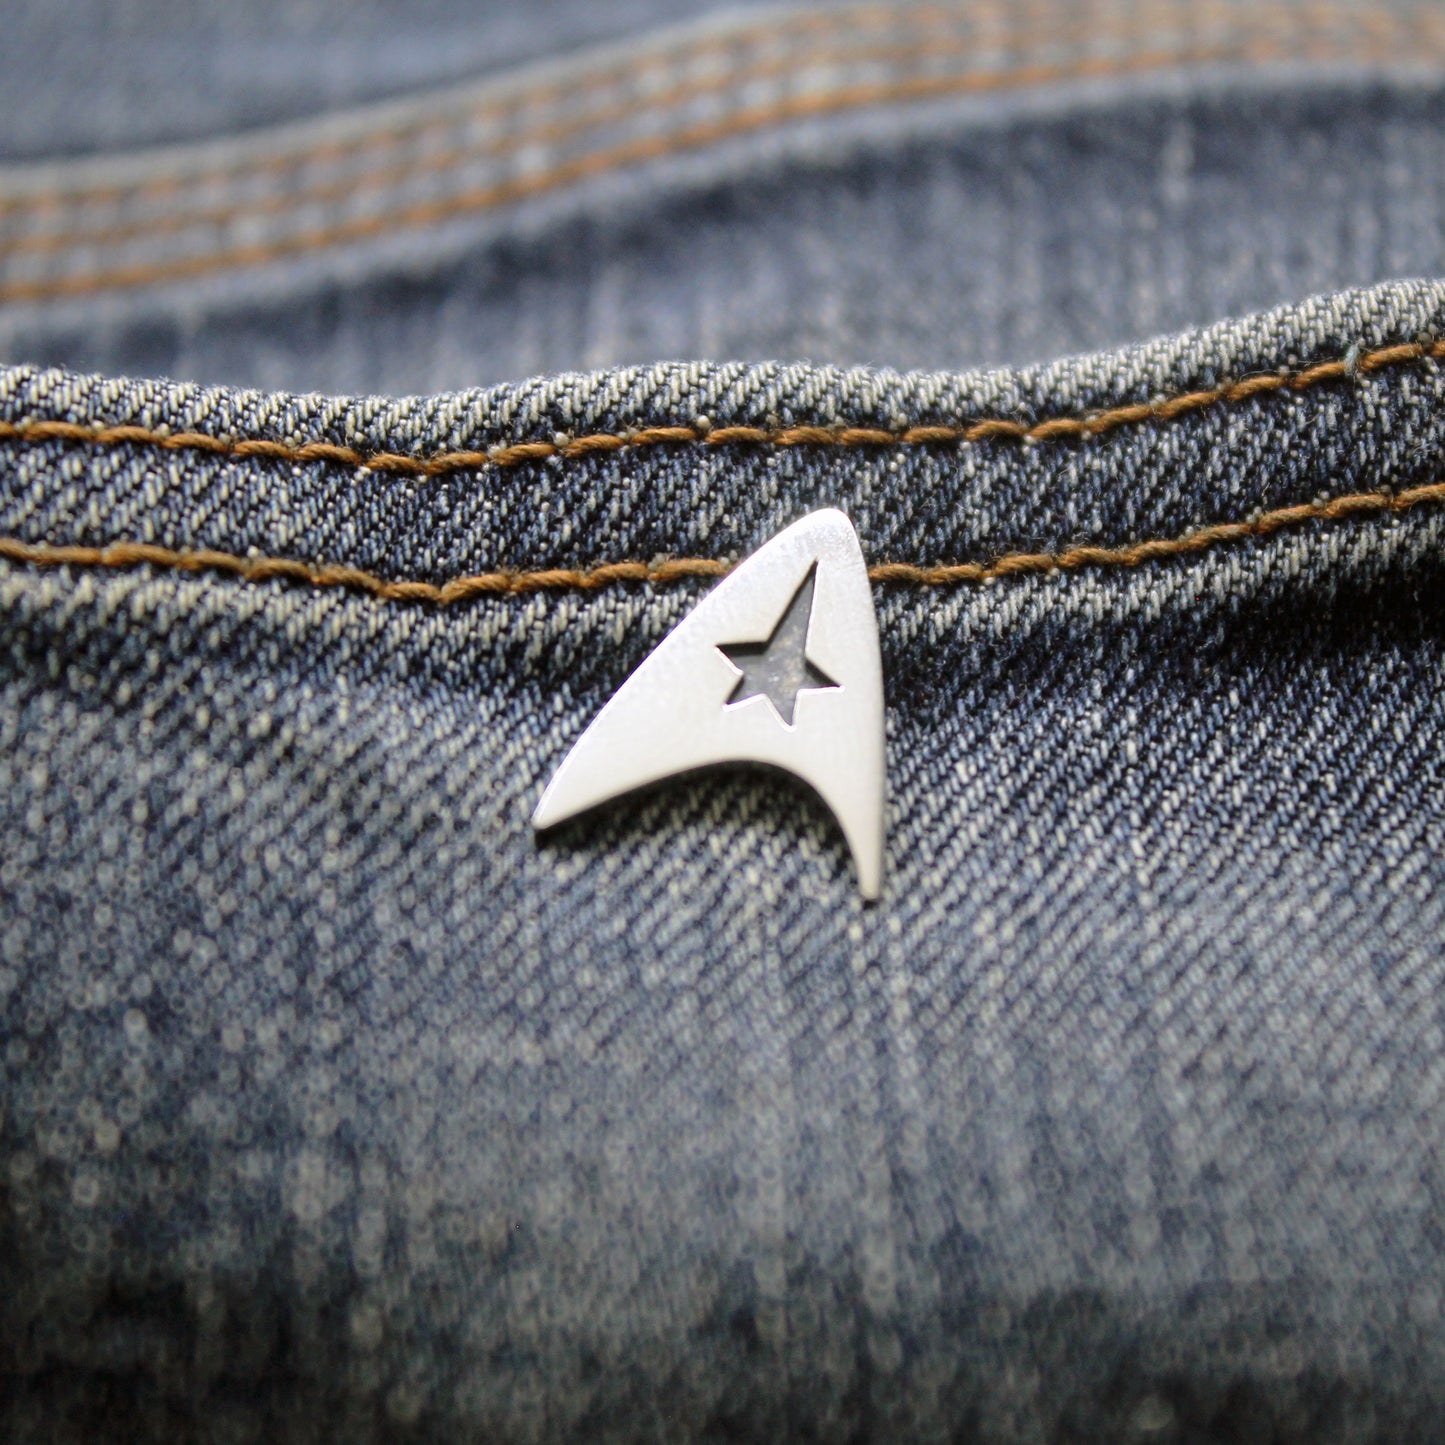 Star Trek Insignia Delta de la Flota Estelar pin en plata 925